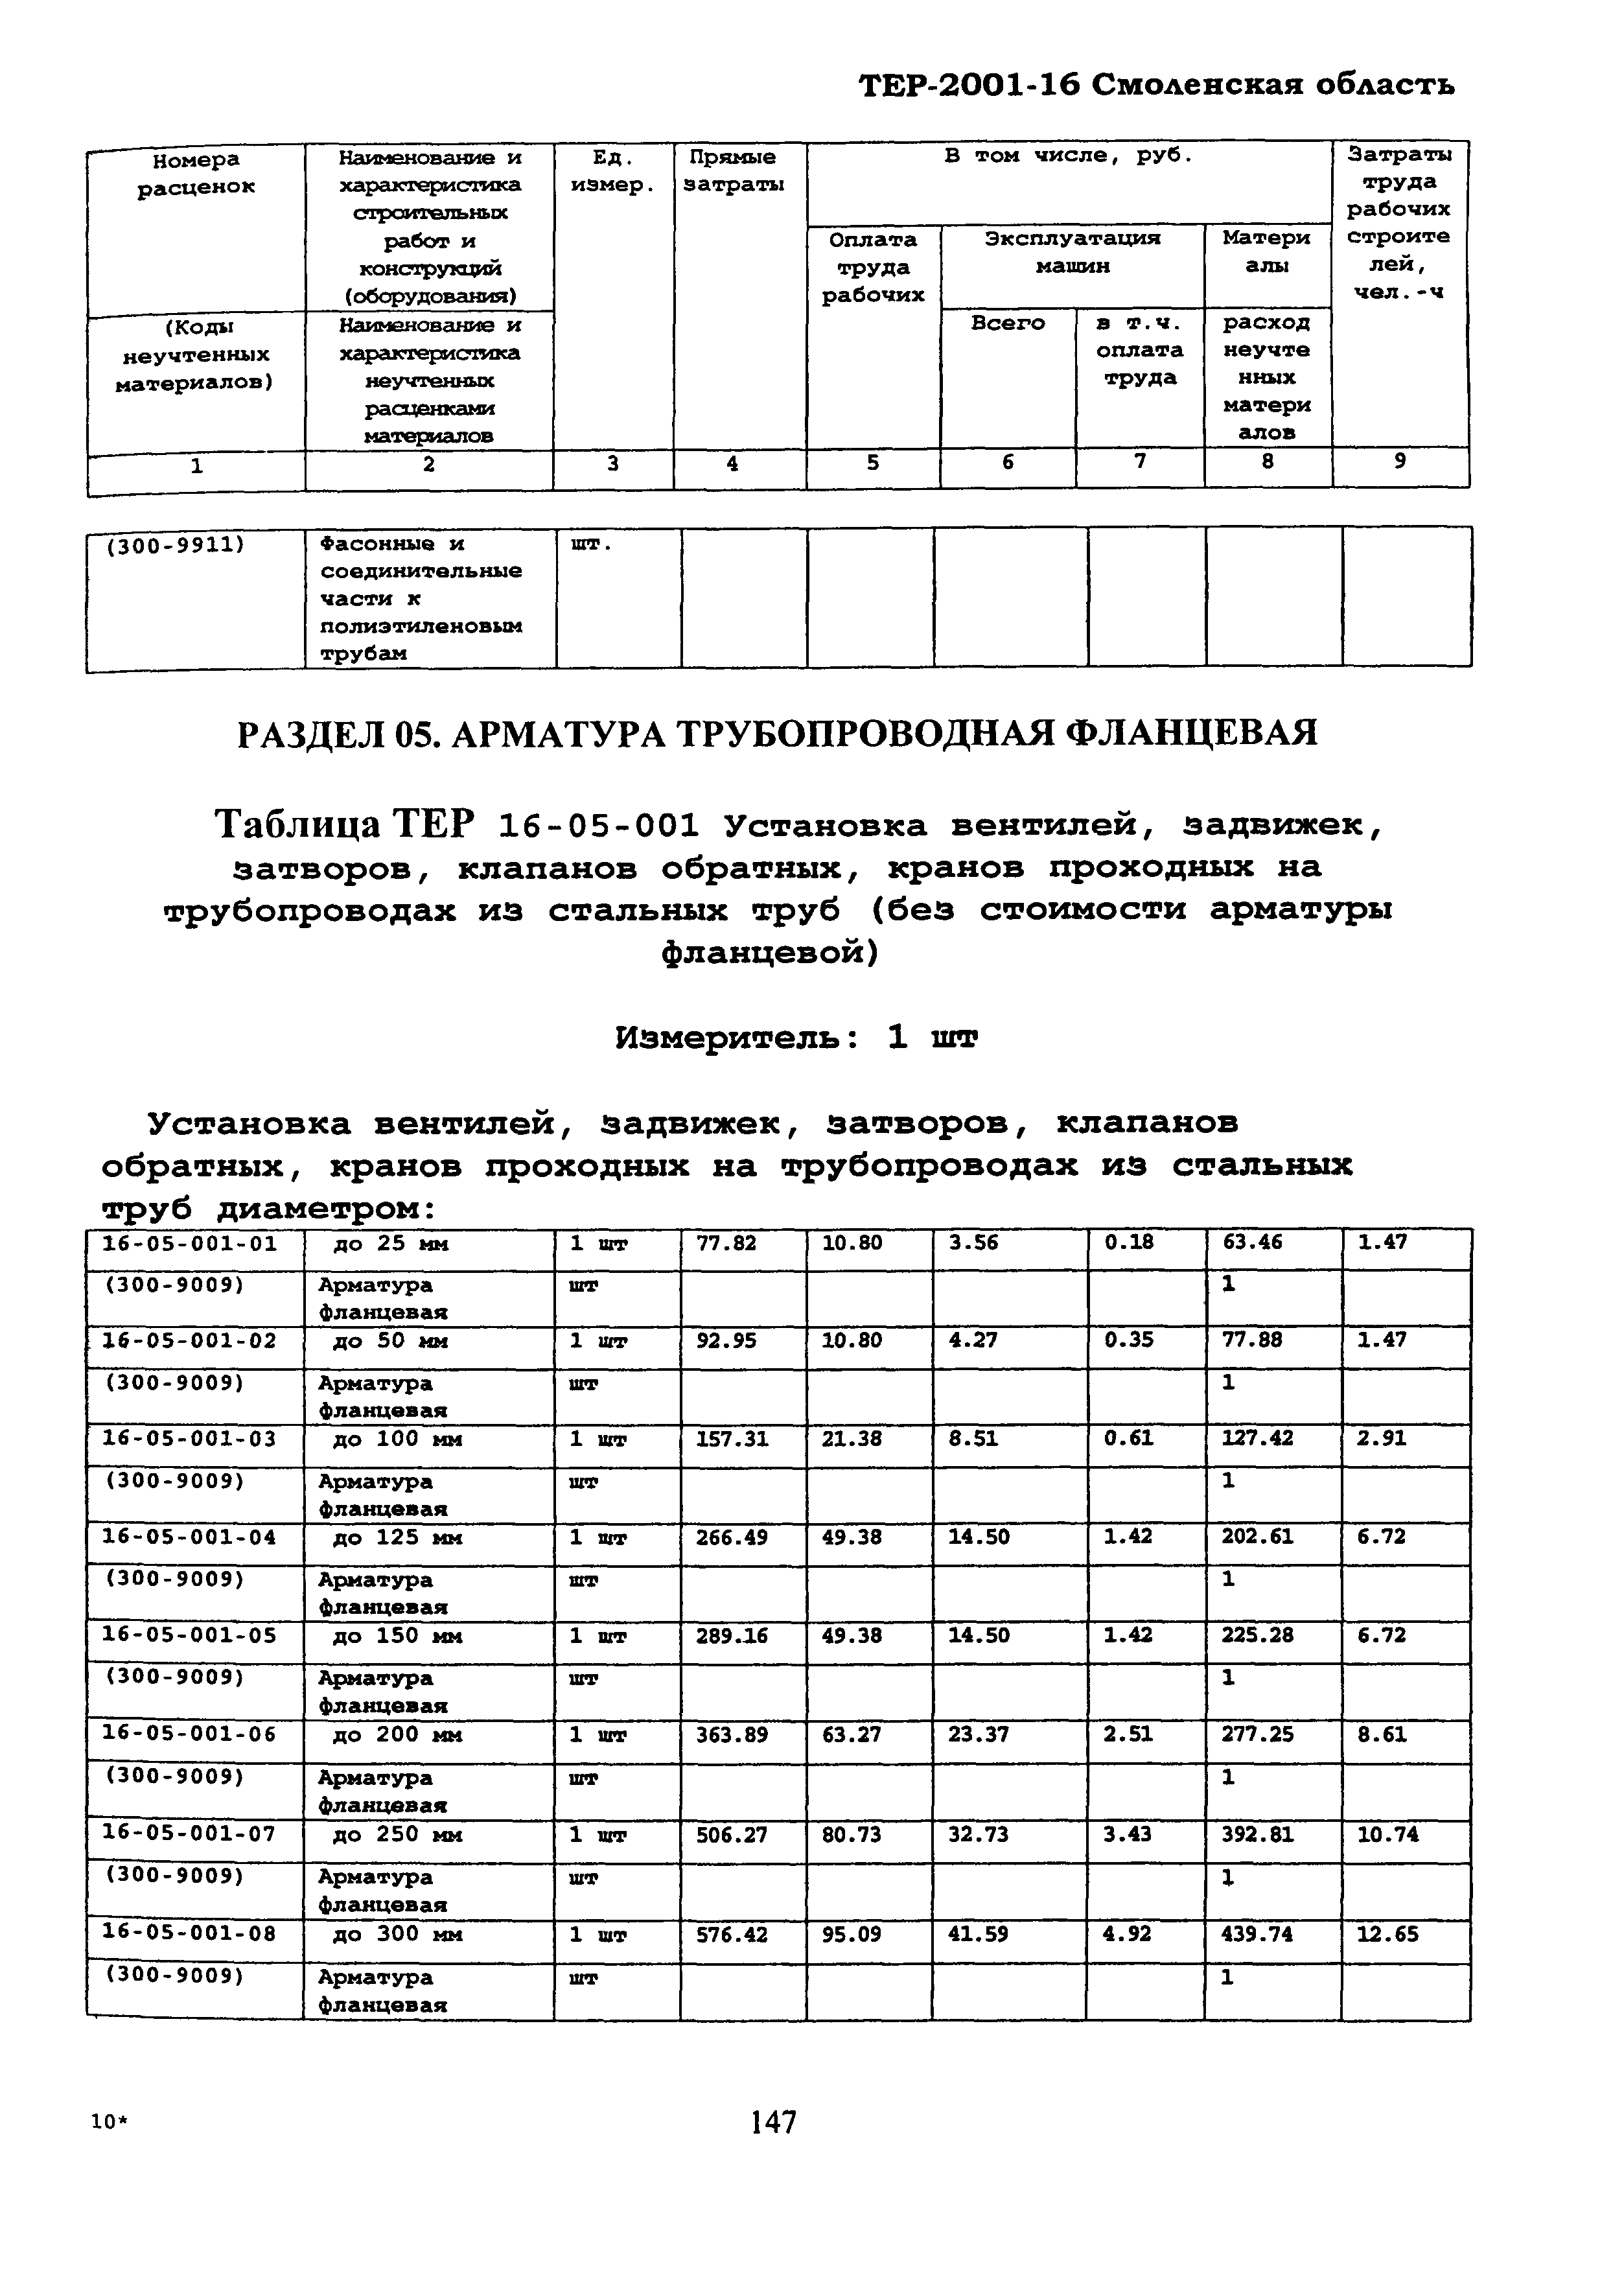 ТЕР Смоленская область 2001-16